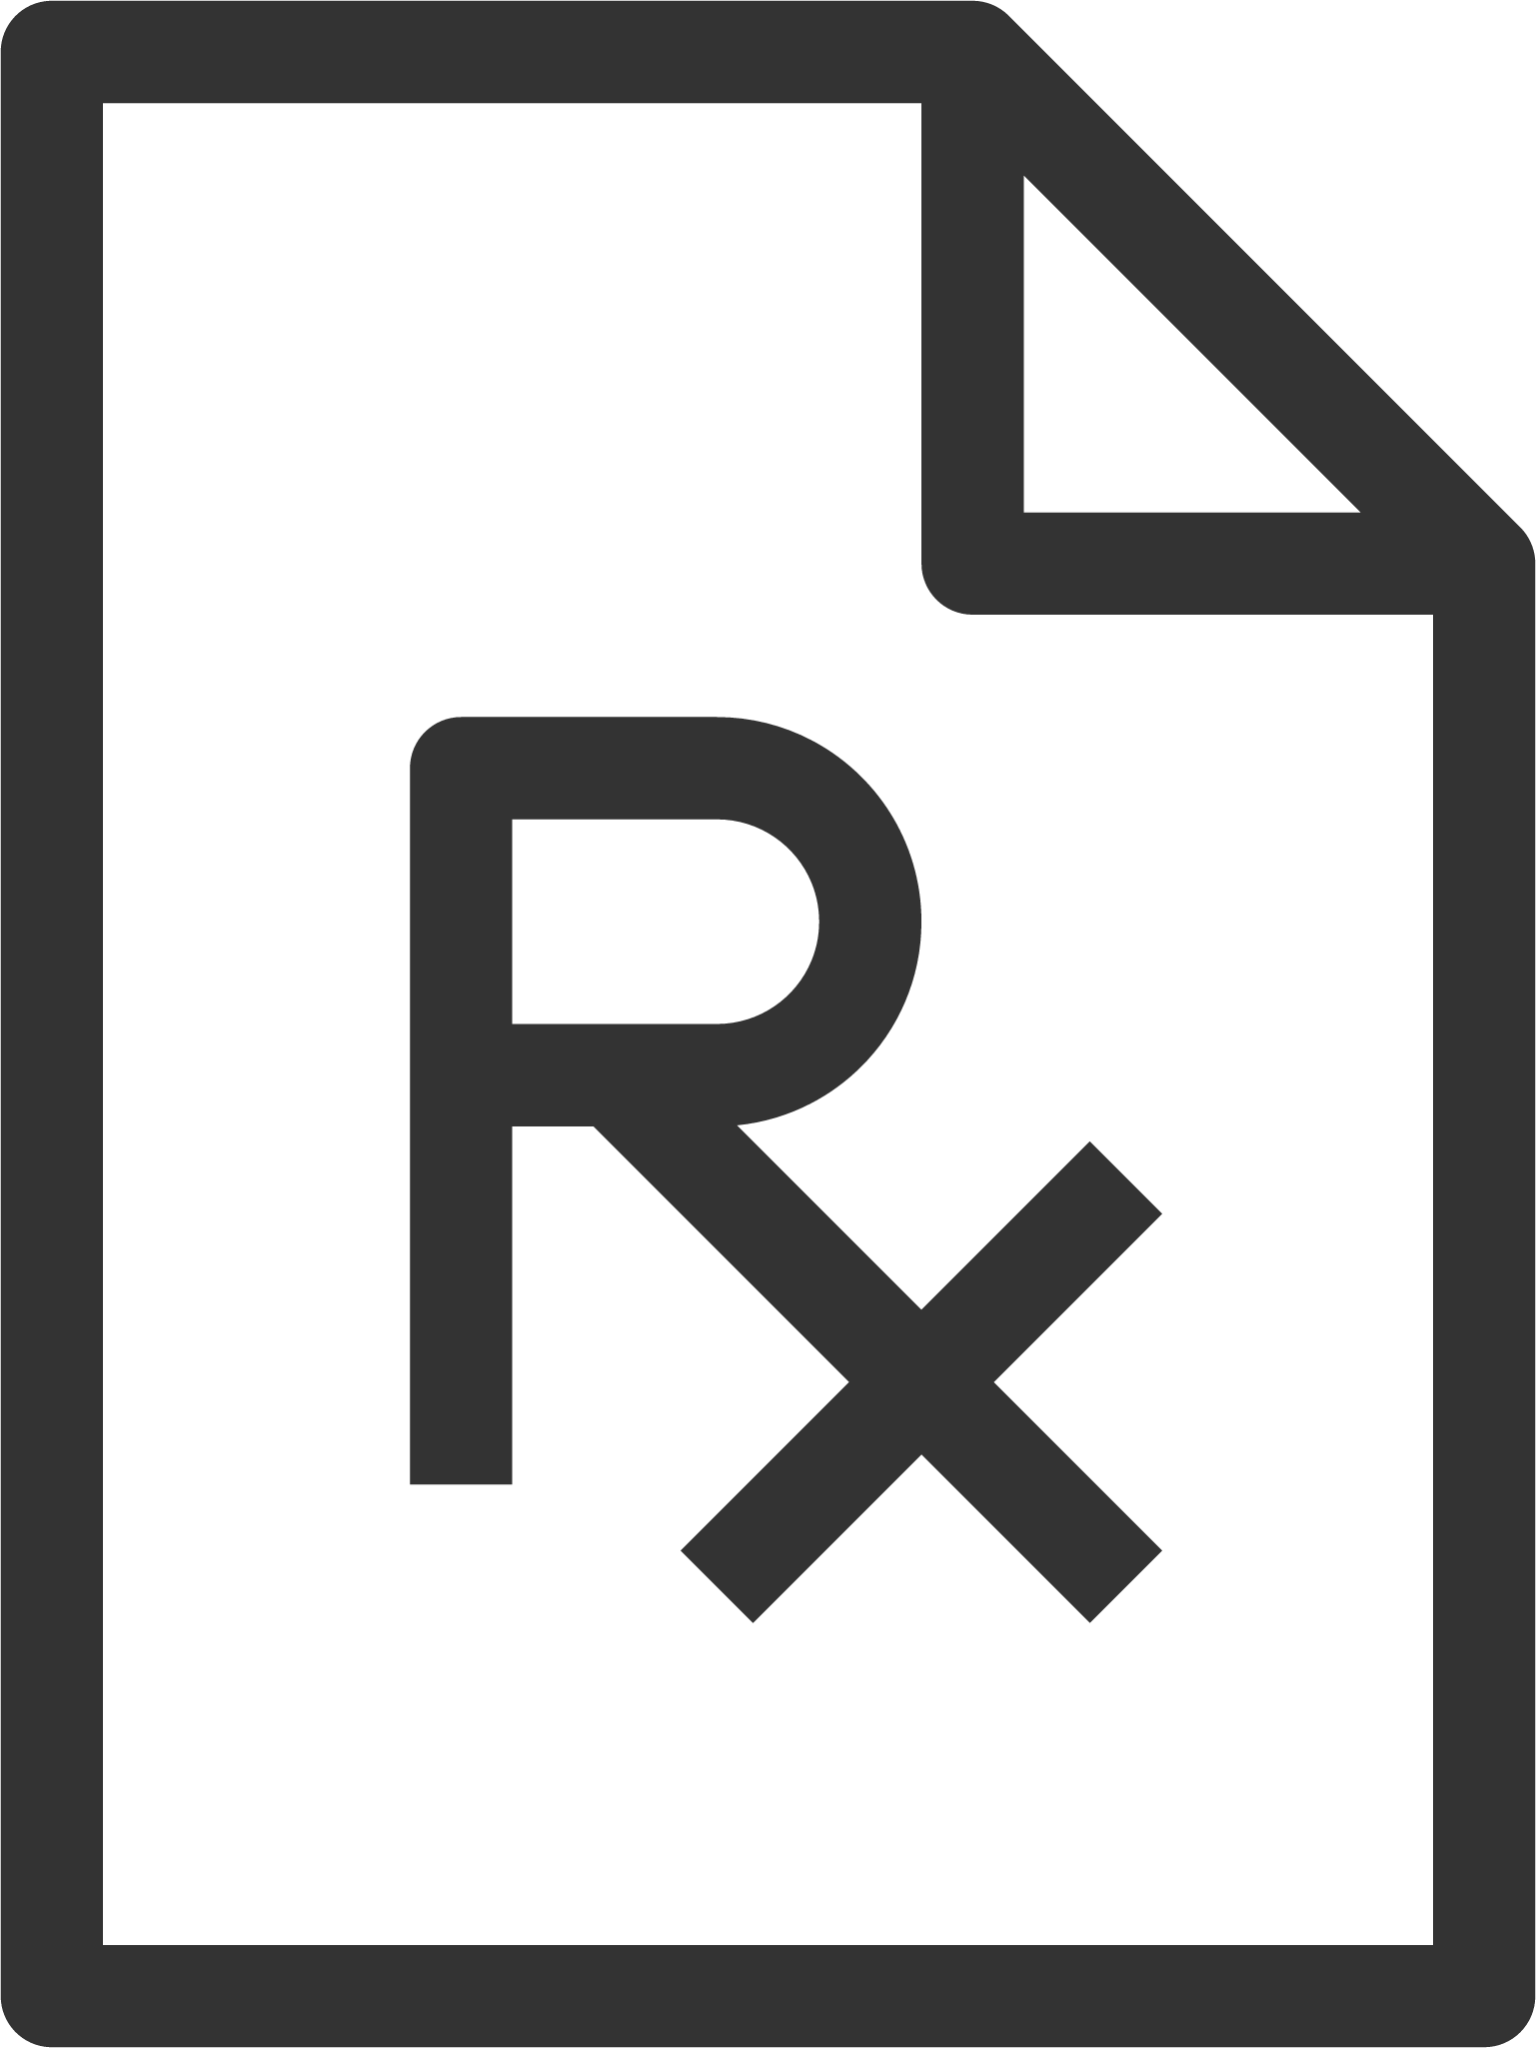 Prescription Document icon